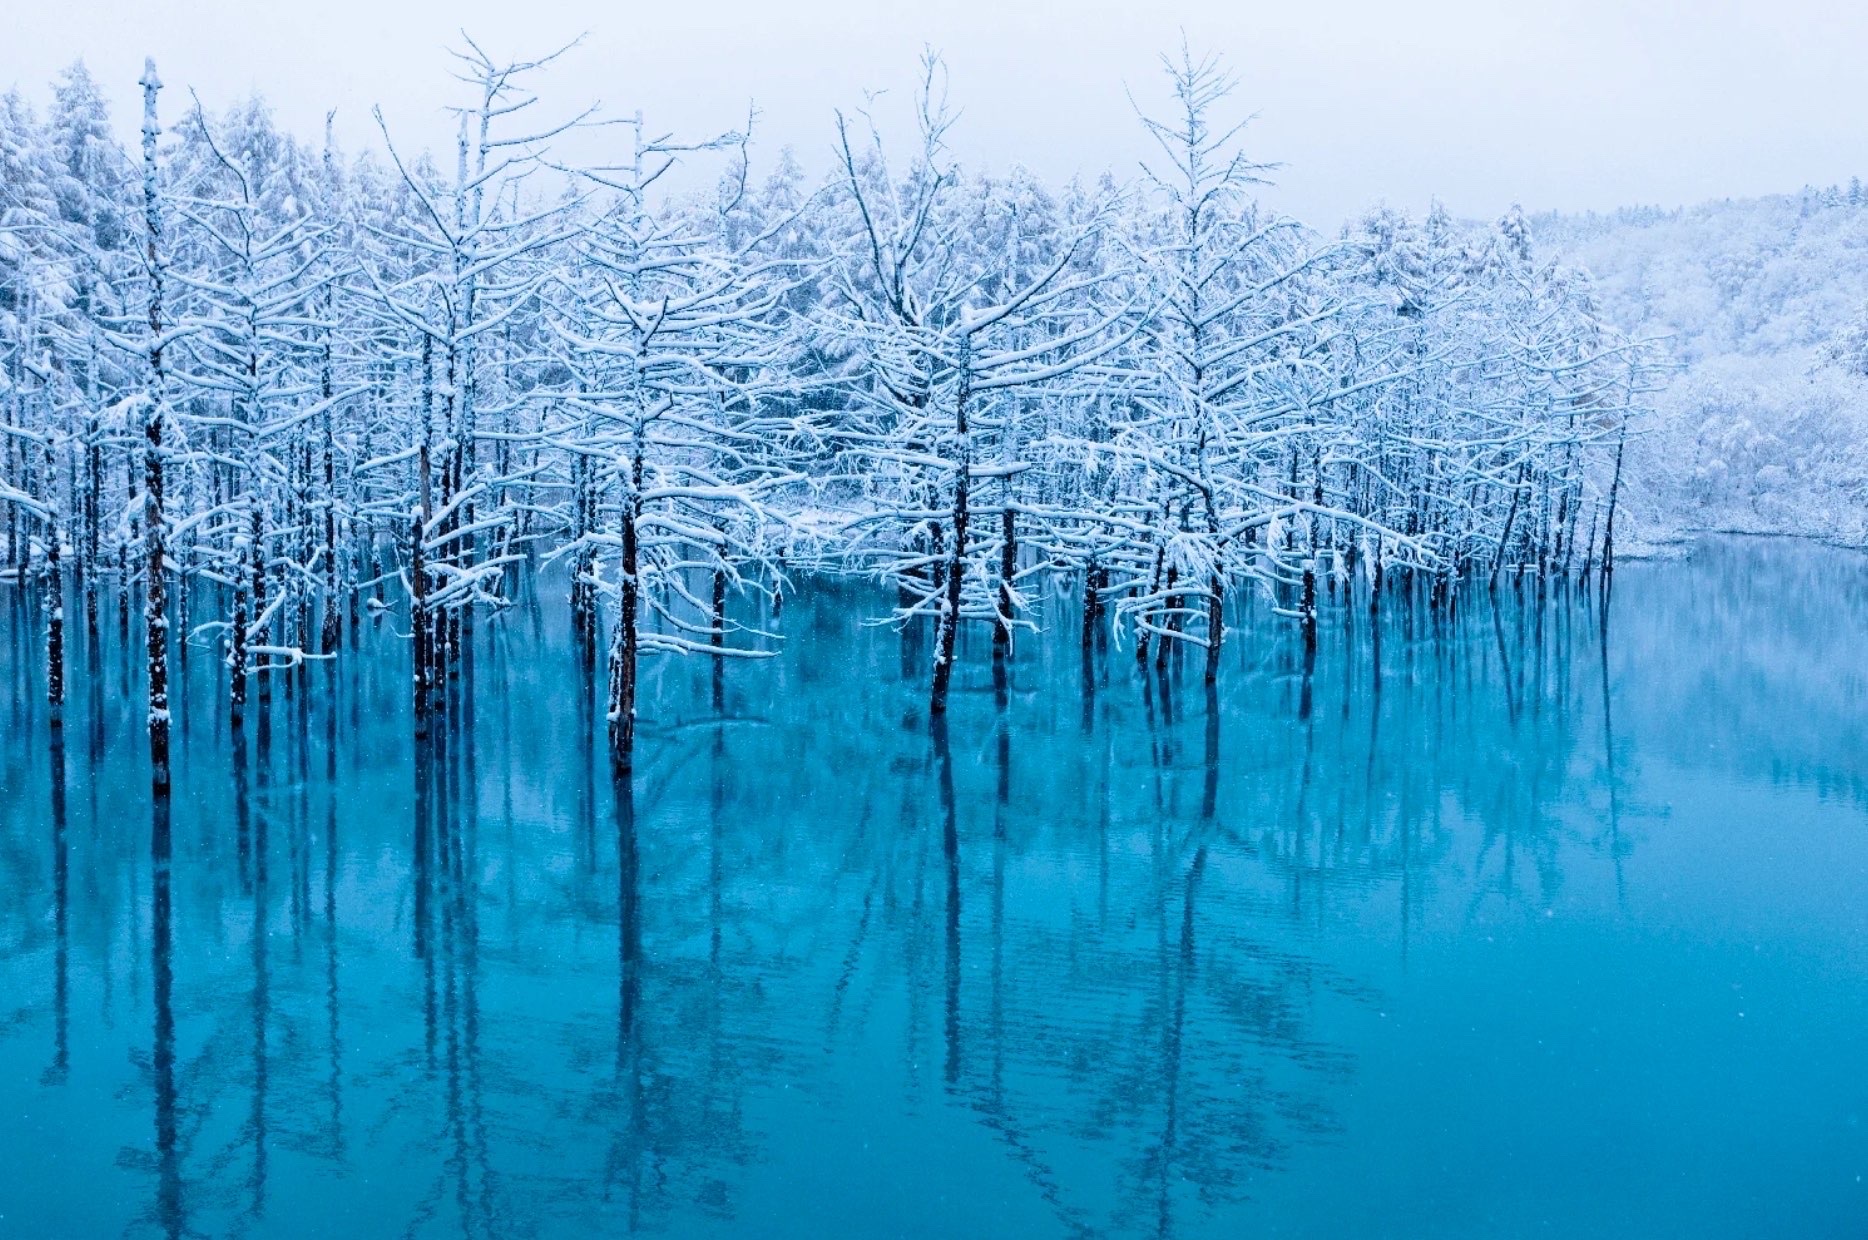 白金青い池
雪景色